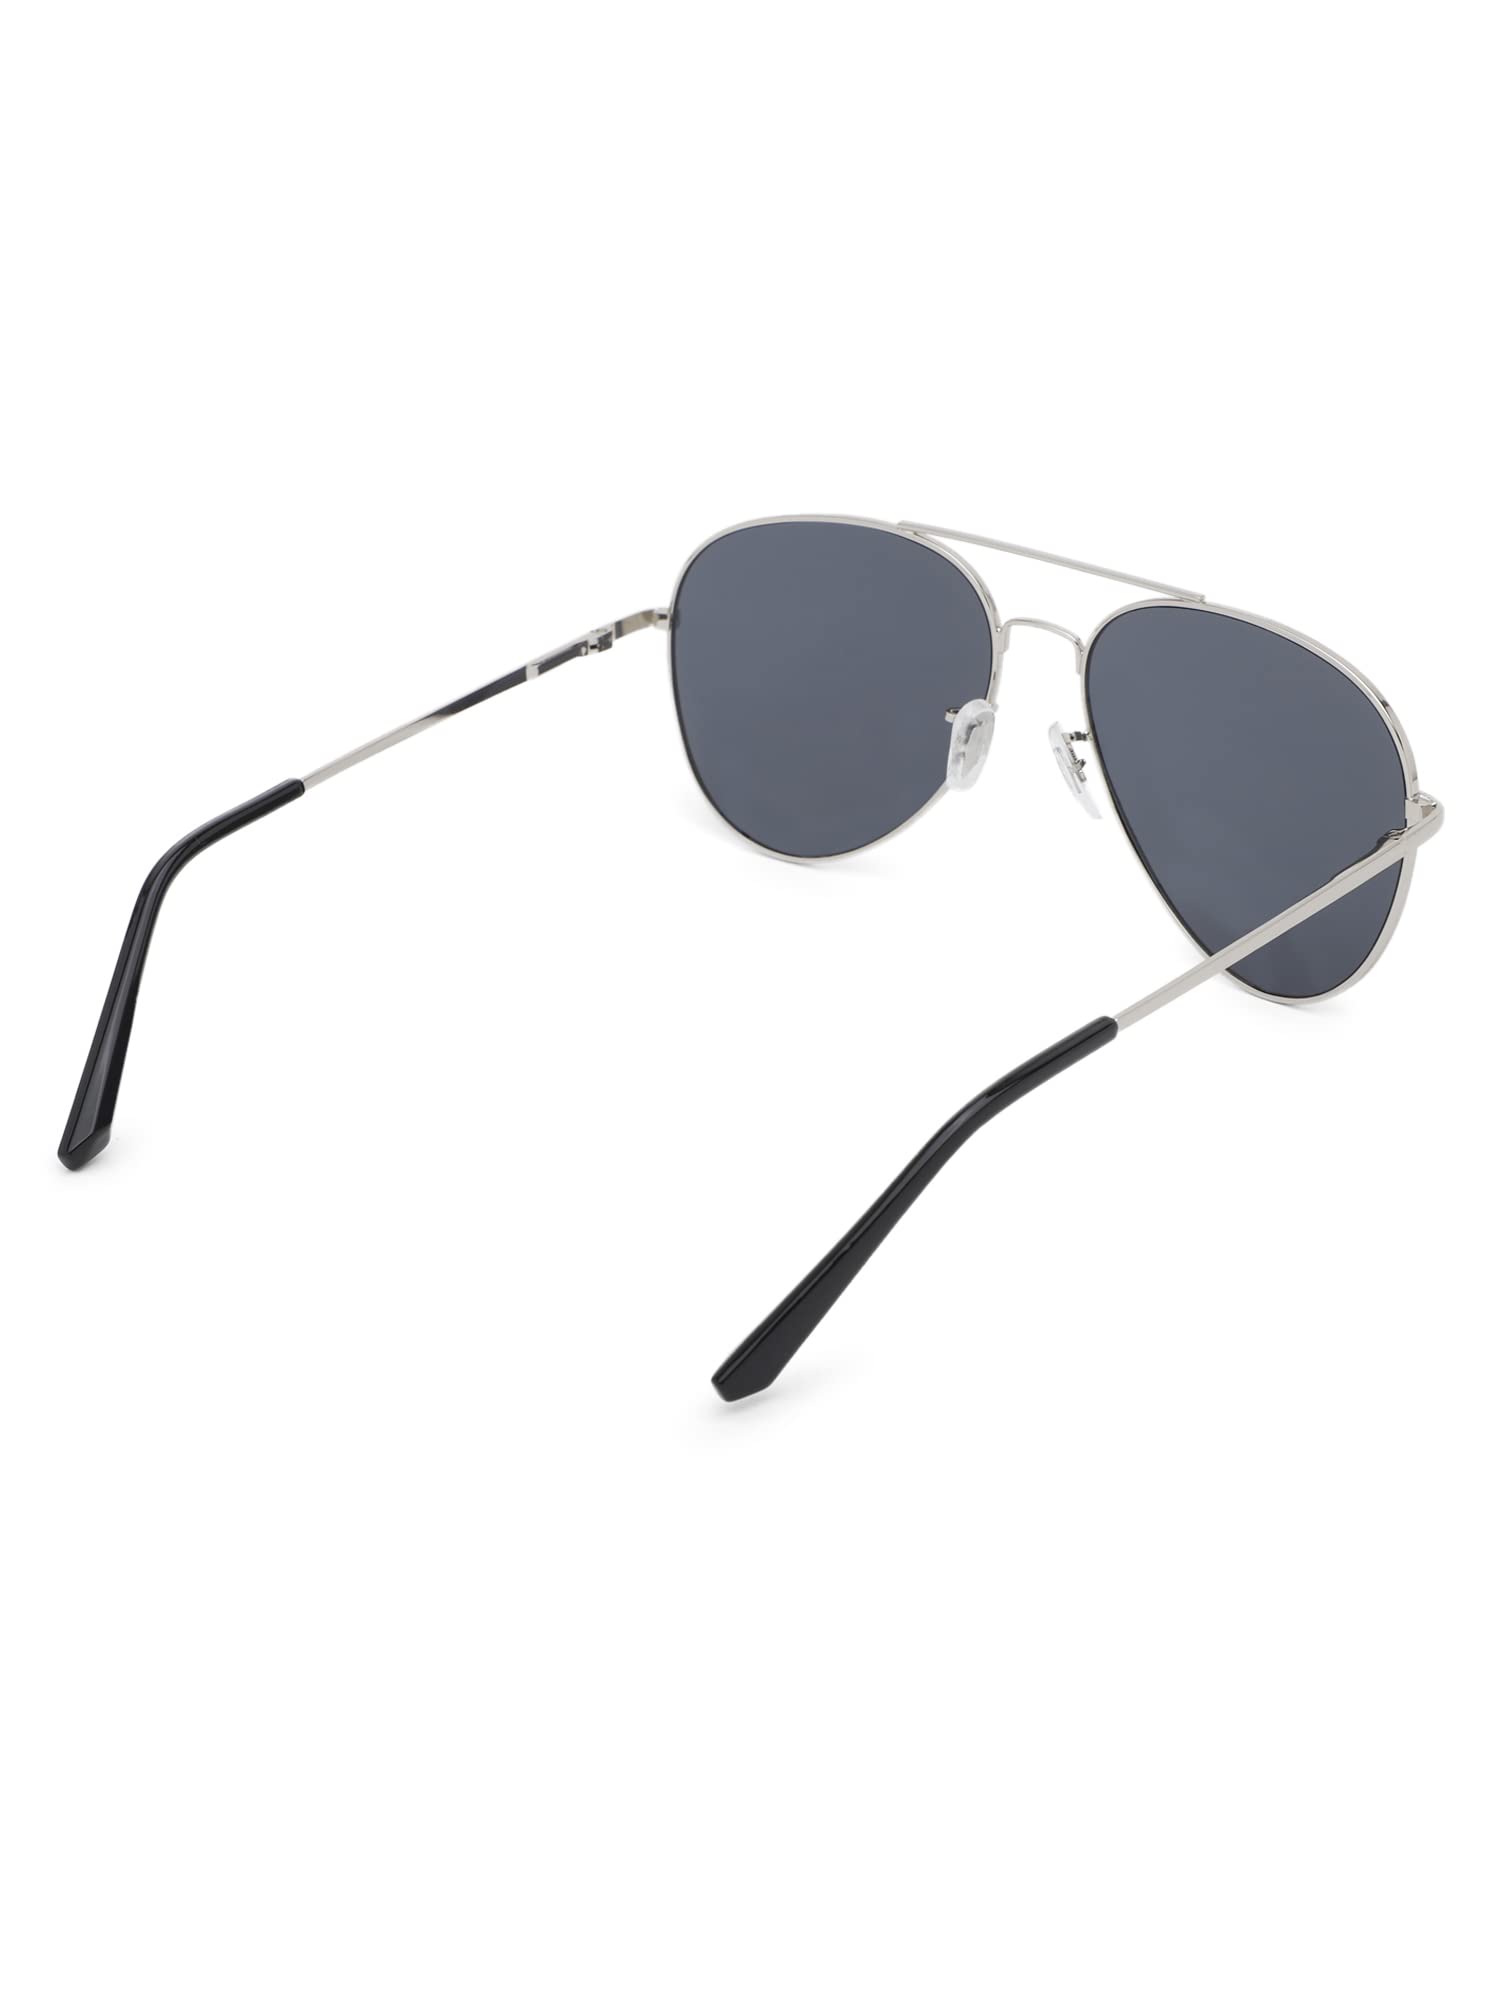 Stylish Polarized Aviator Sunglasses - Premium Quality - 100% UV Protection